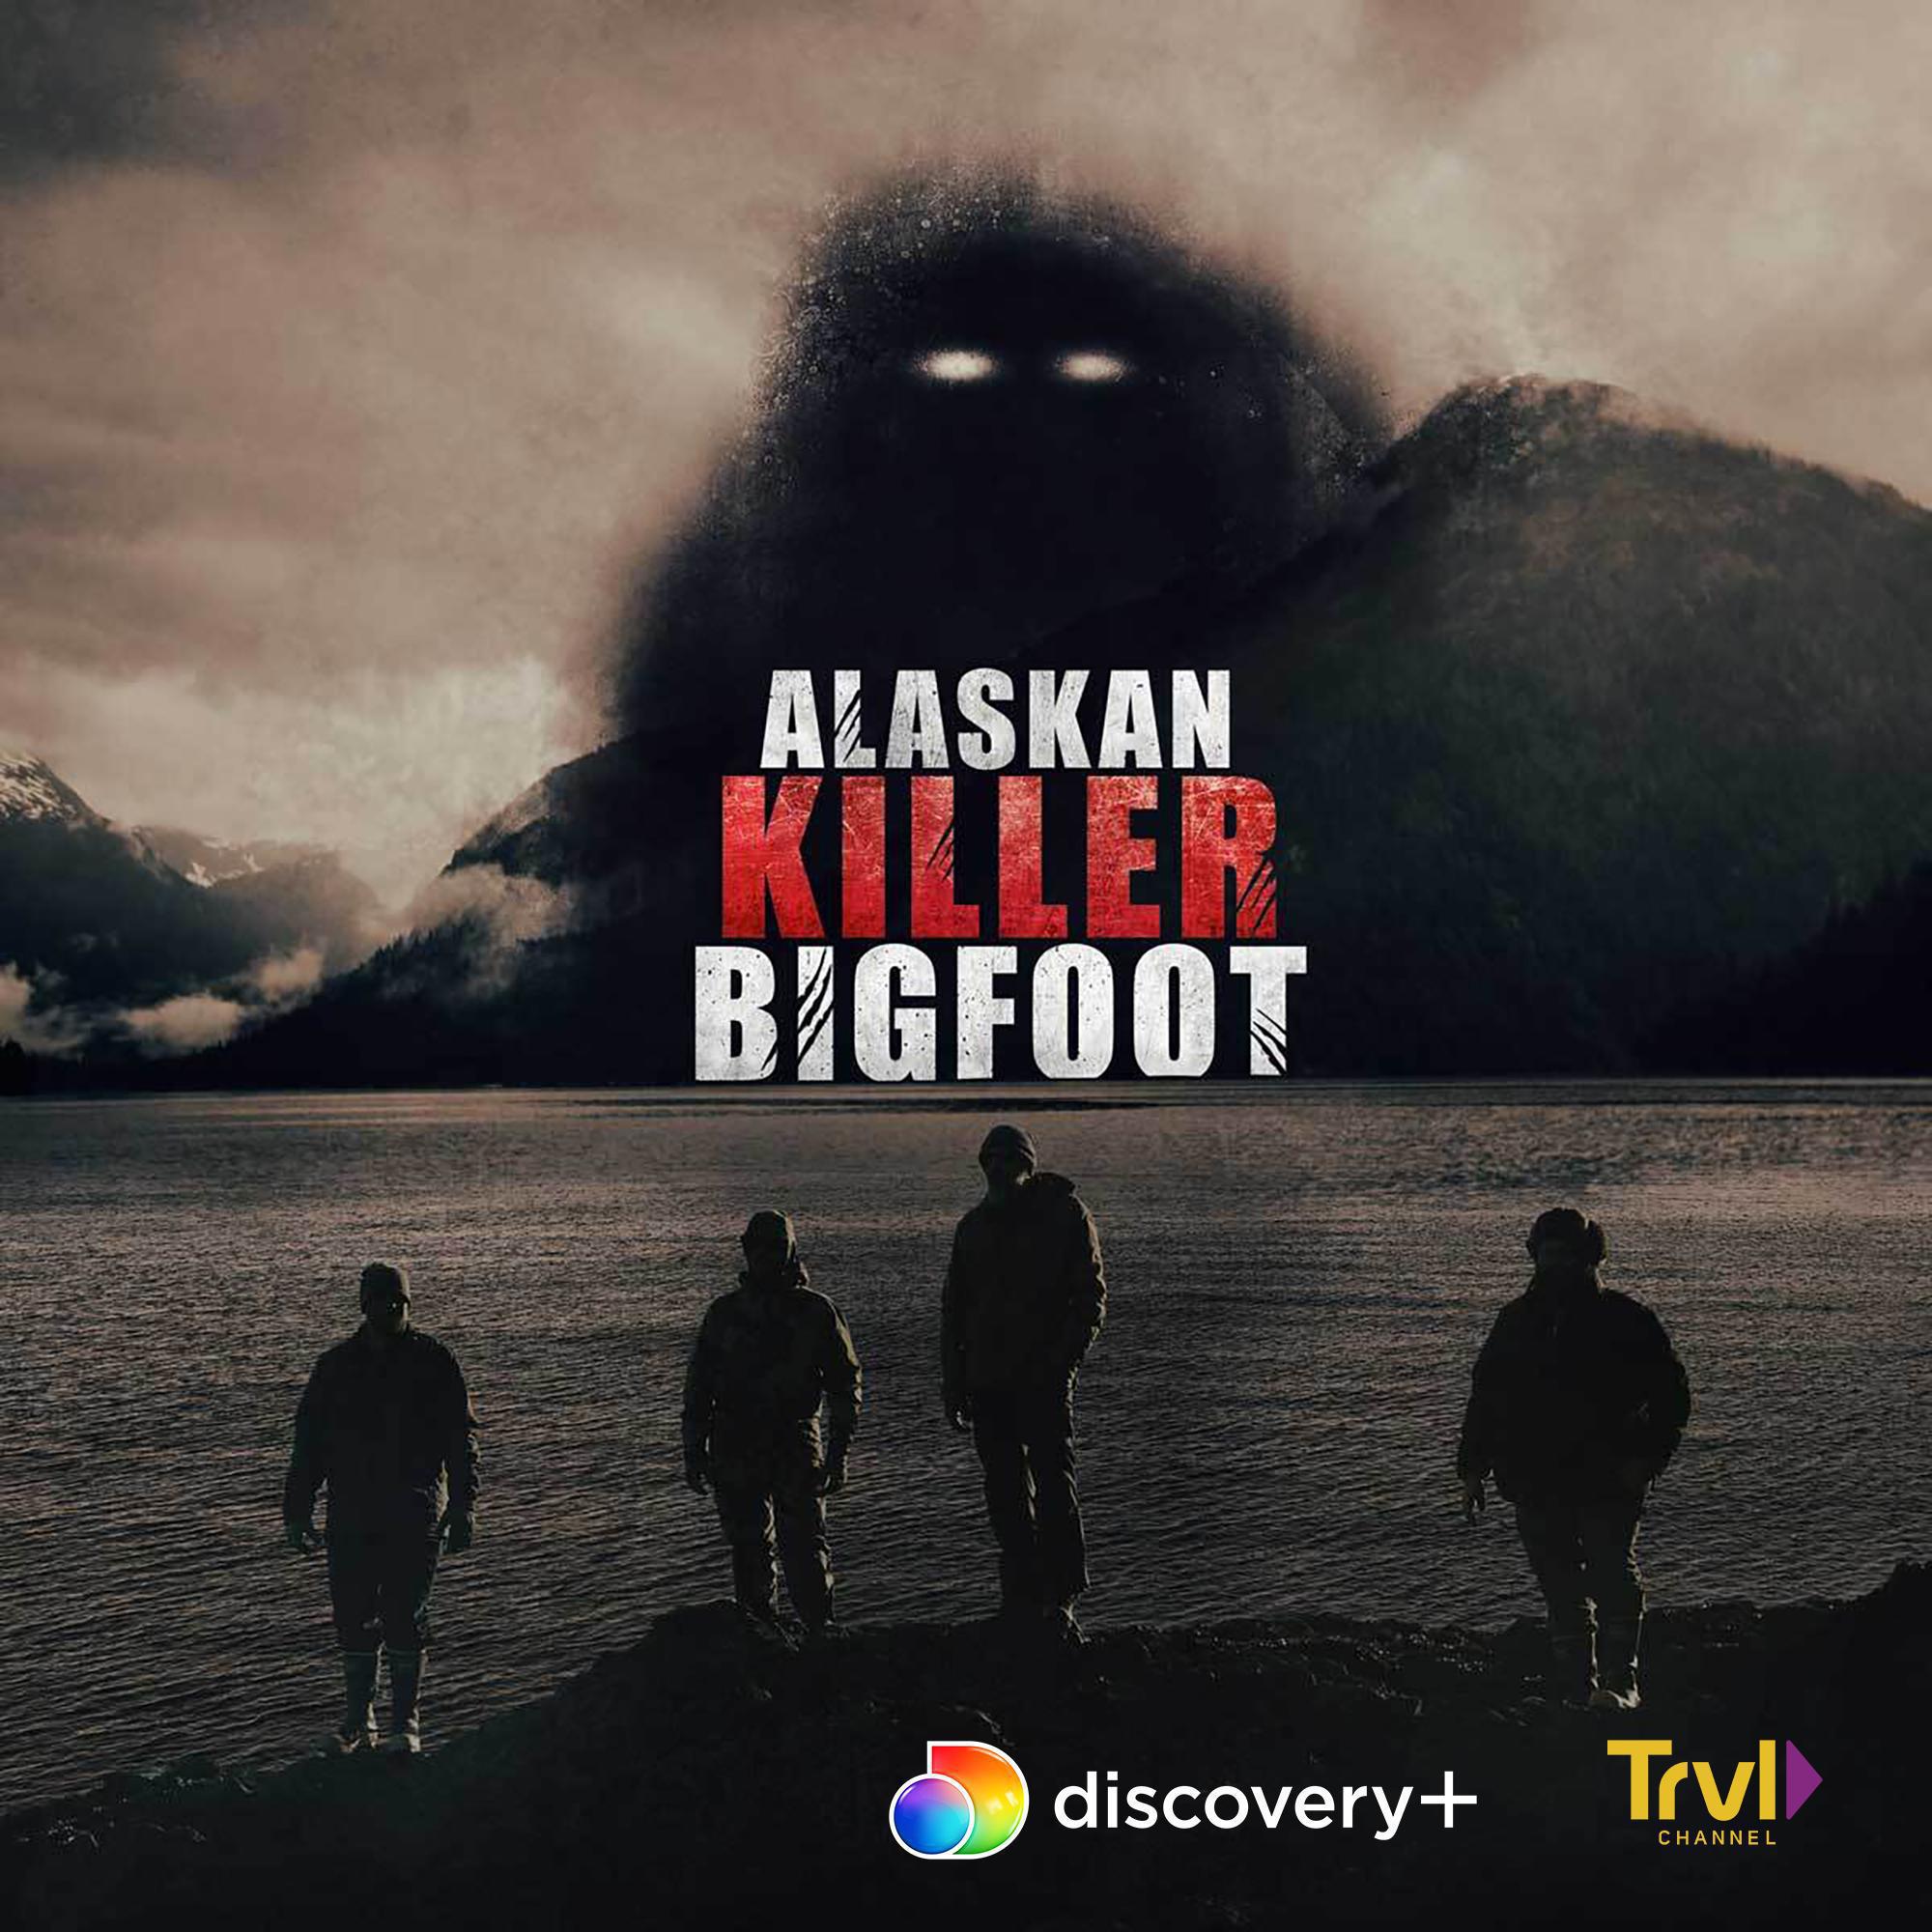 TV ratings for Alaskan Killer Bigfoot in Turquía. Discovery+ TV series